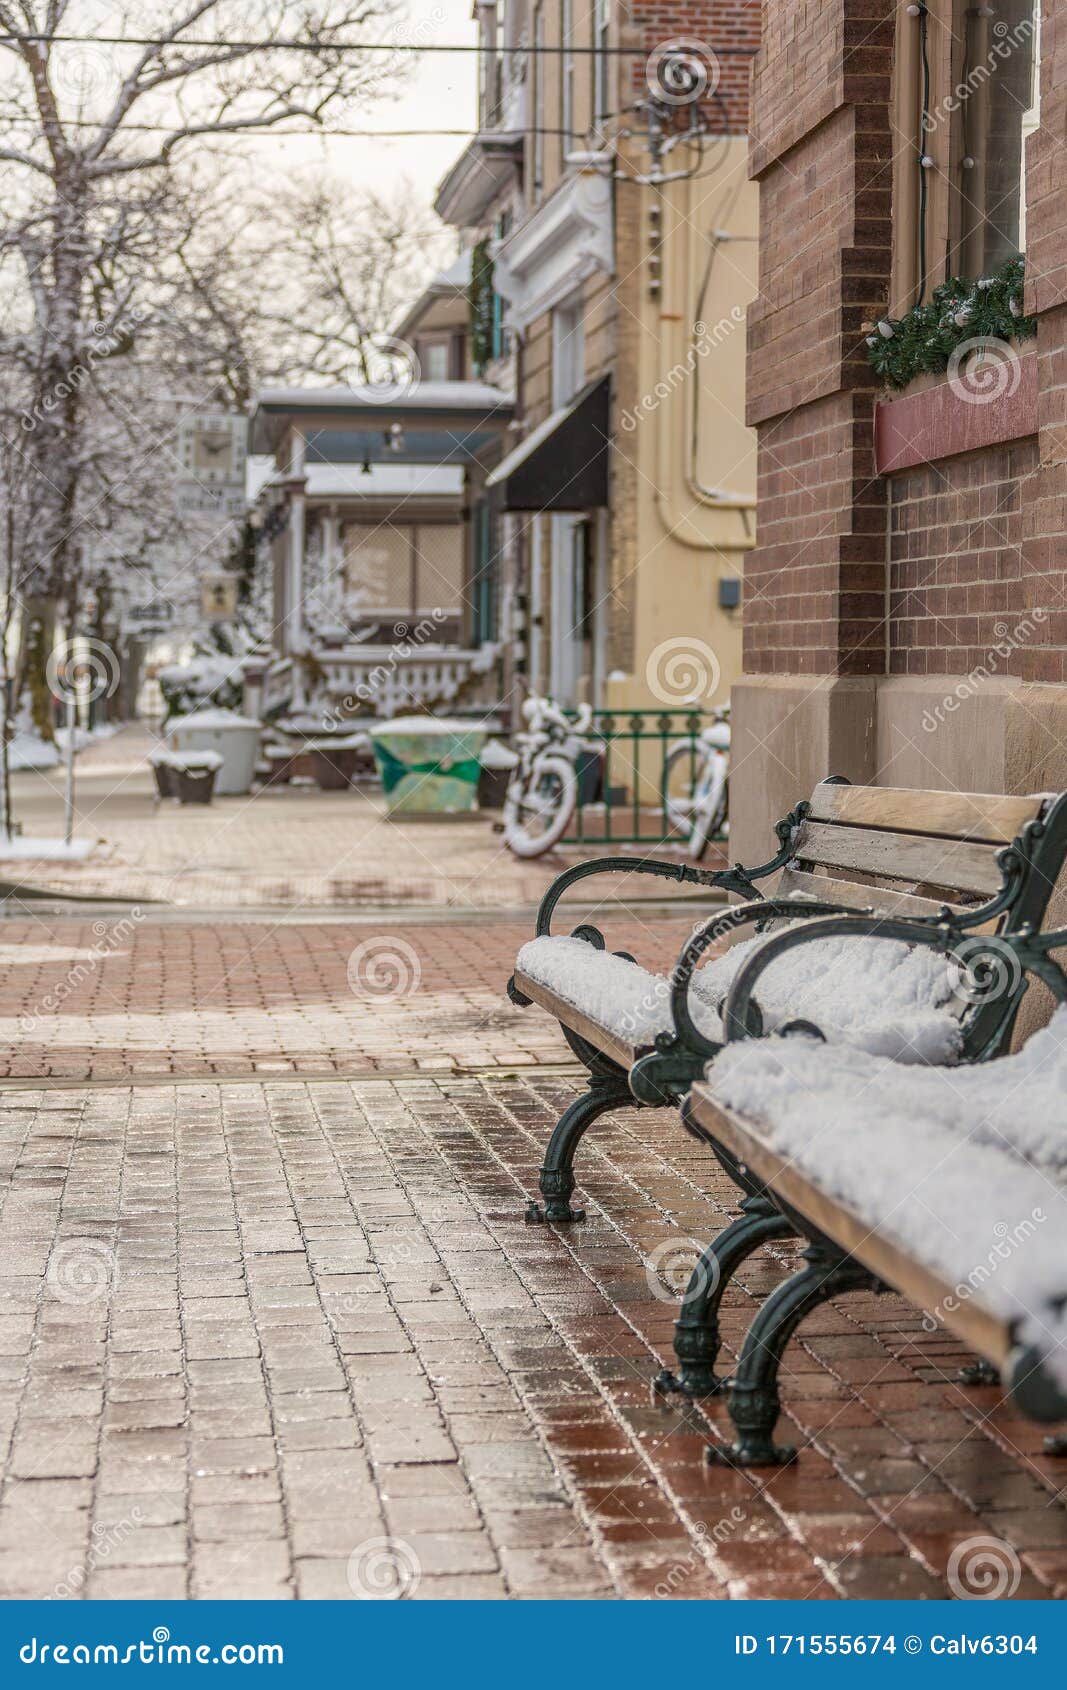 empty, wet, snowy, dreary winter street in small town